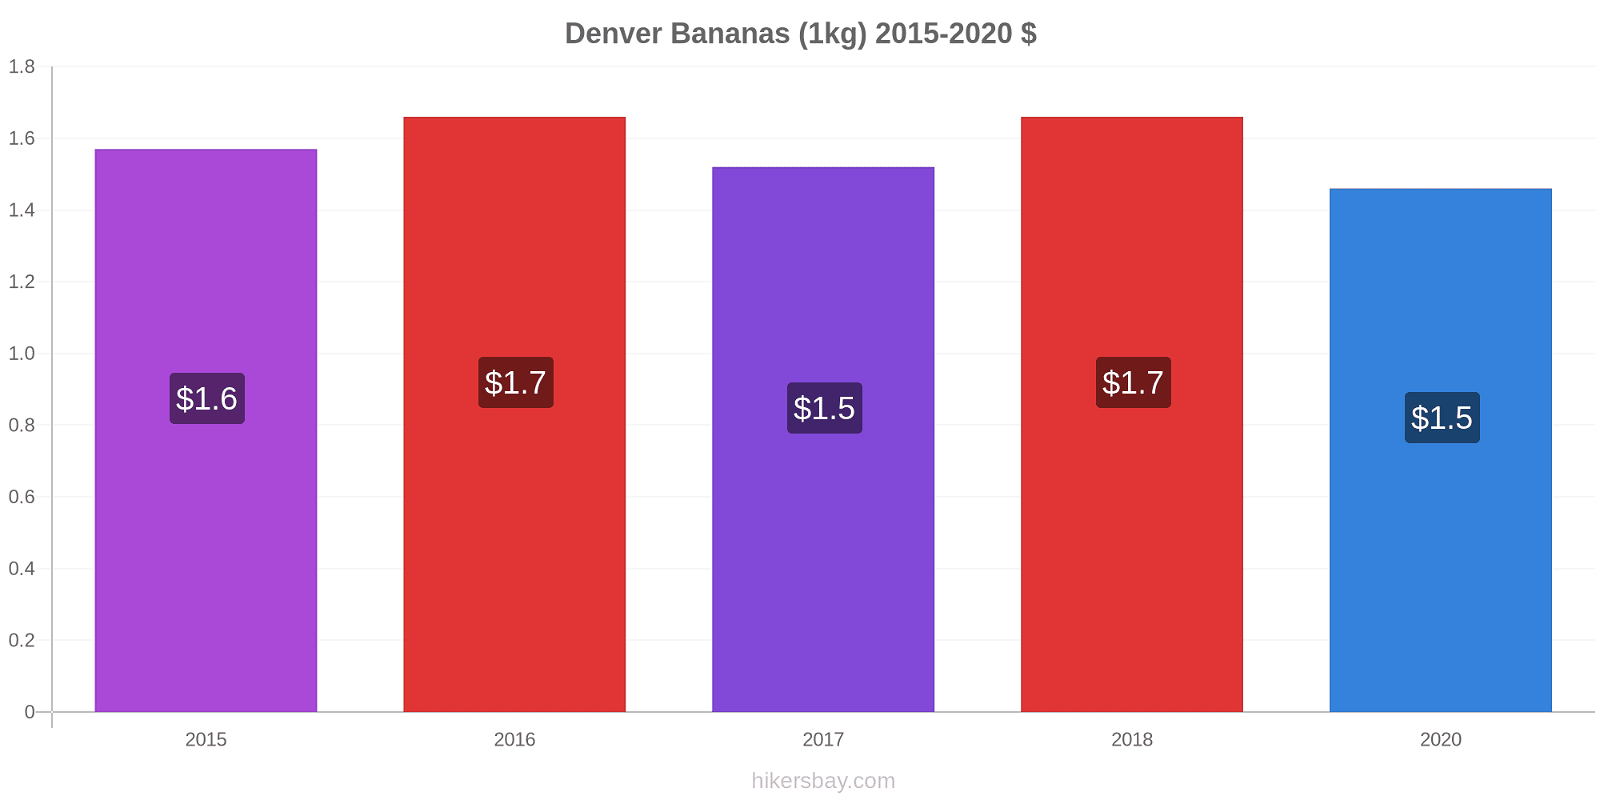 Denver variação de preço Banana (1kg) hikersbay.com